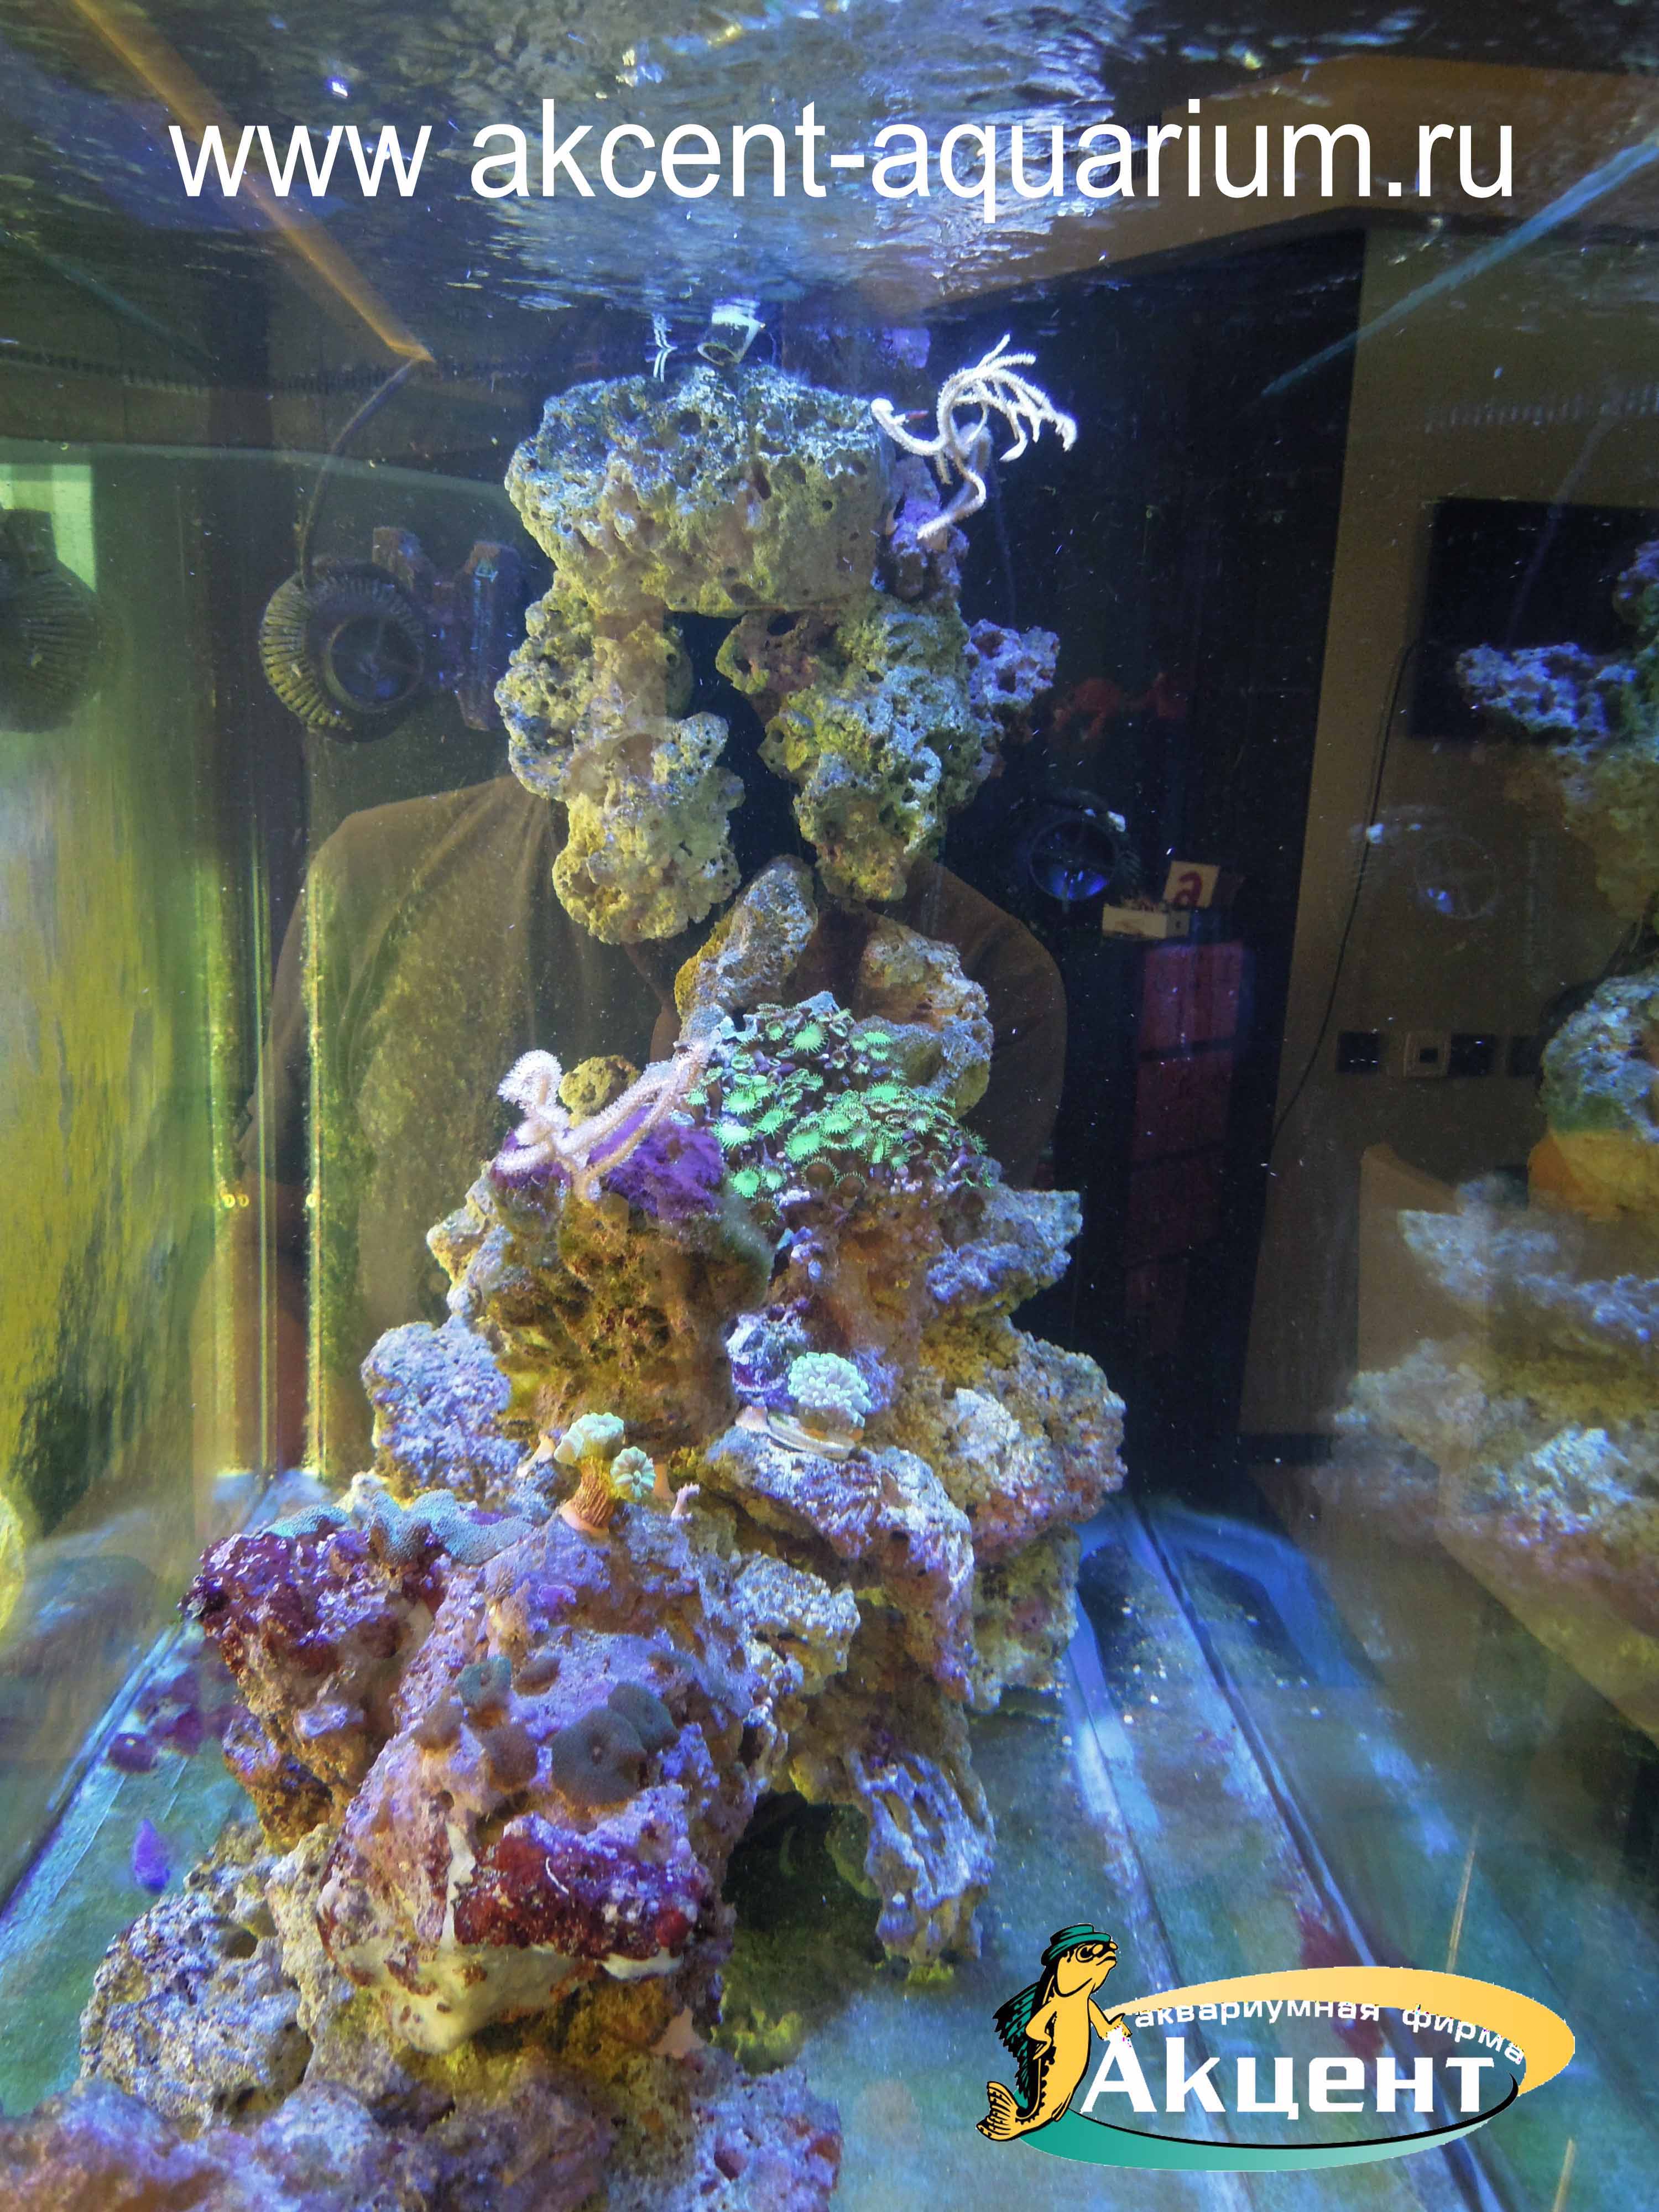 Акцент-аквариум,просмотровый морской аквариум 500 литров, вид с торца, живые камни, мягкие кораллы, жесткие кораллы